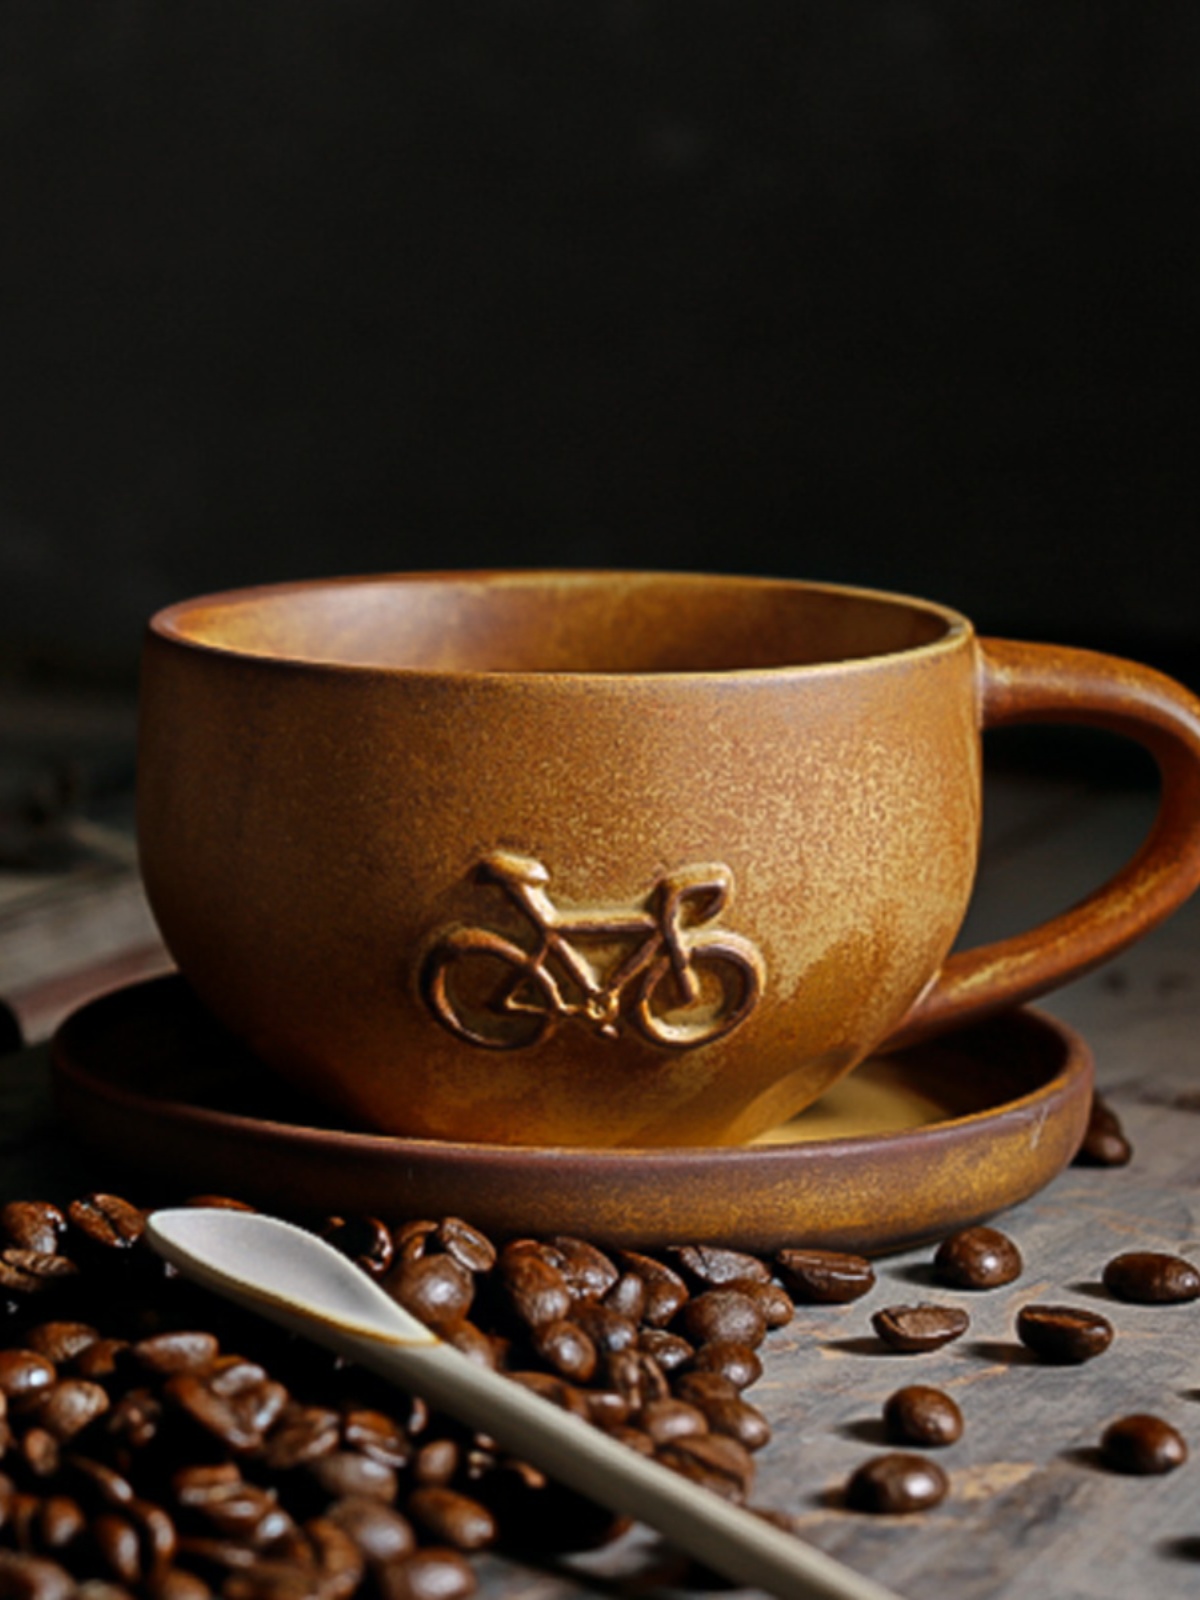 北歐風復古陶瓷咖啡杯早晨拿鐵拉花下午茶甜品送禮自用合適